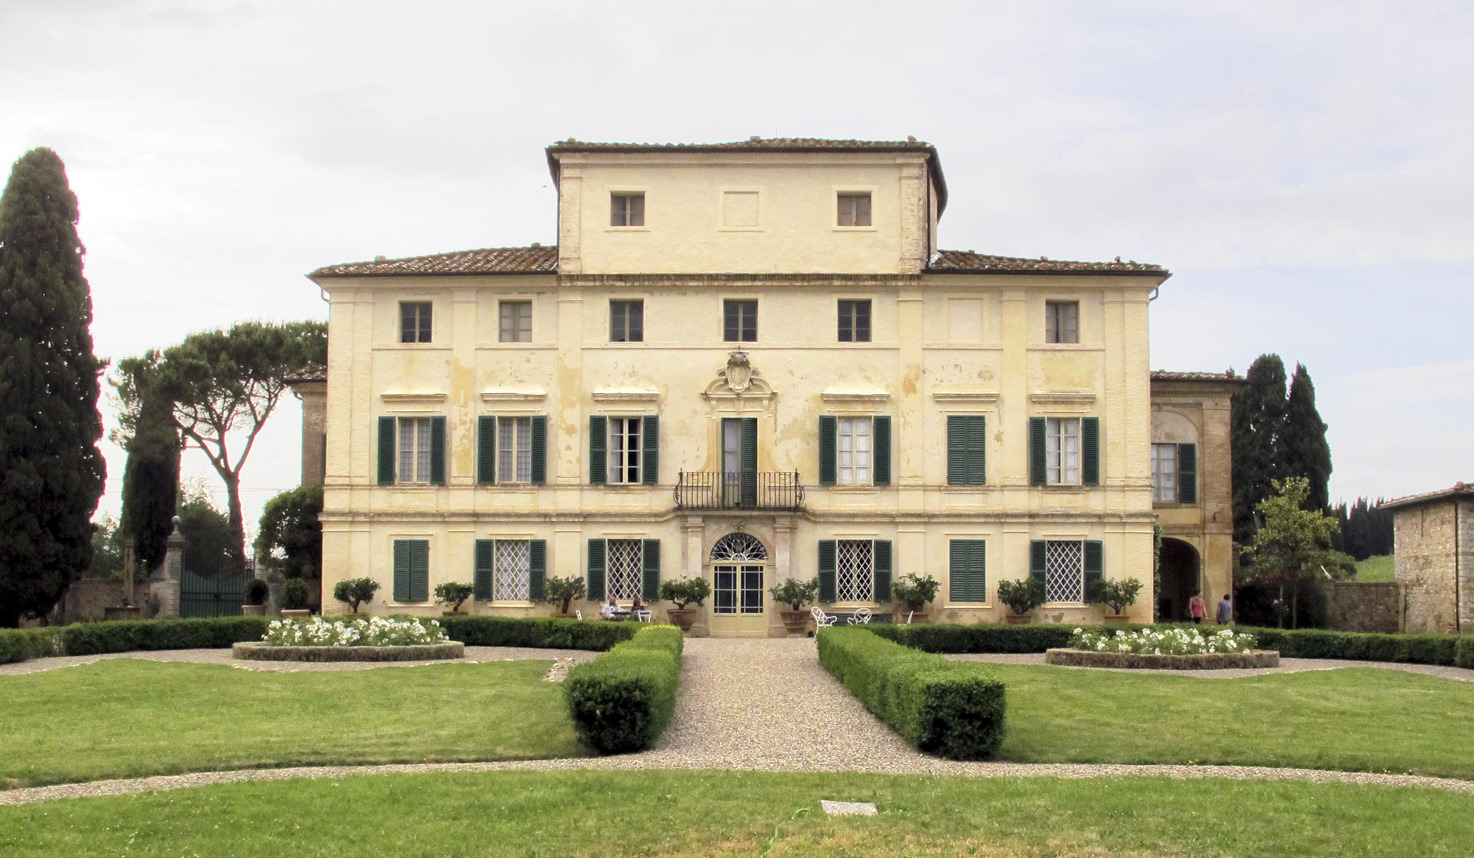 Façade of Villa di Geggiano